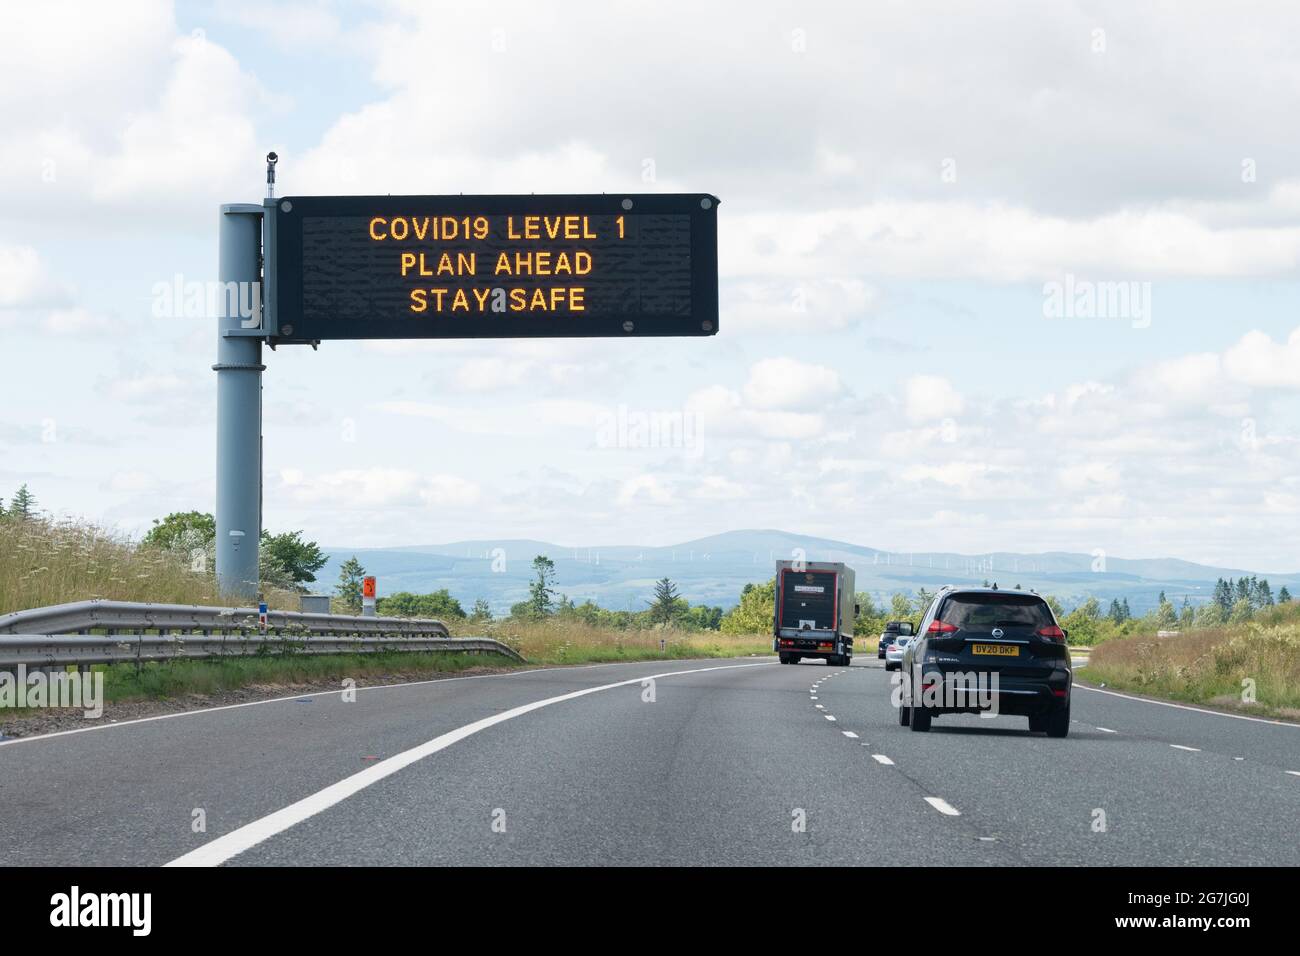 1 señal de autopista de nivel COVID19, Escocia, Reino Unido durante la pandemia de coronavirus Foto de stock